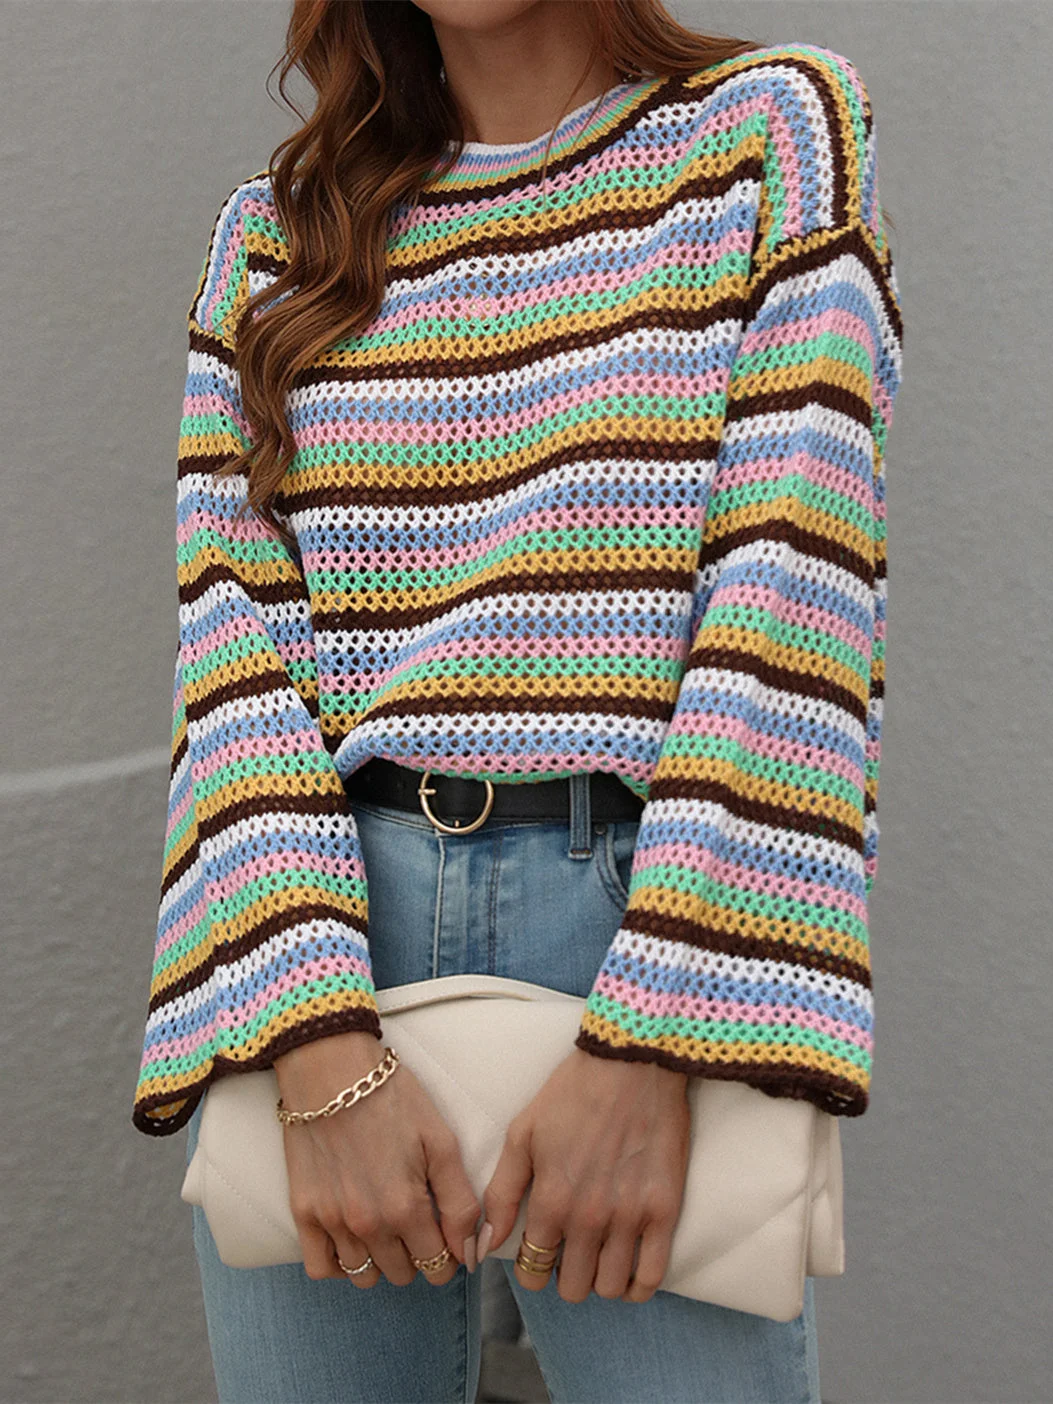 Women plus size clothing Women's Scoop Neck Long Sleeve Striped Top Knit Sweater-Nordswear